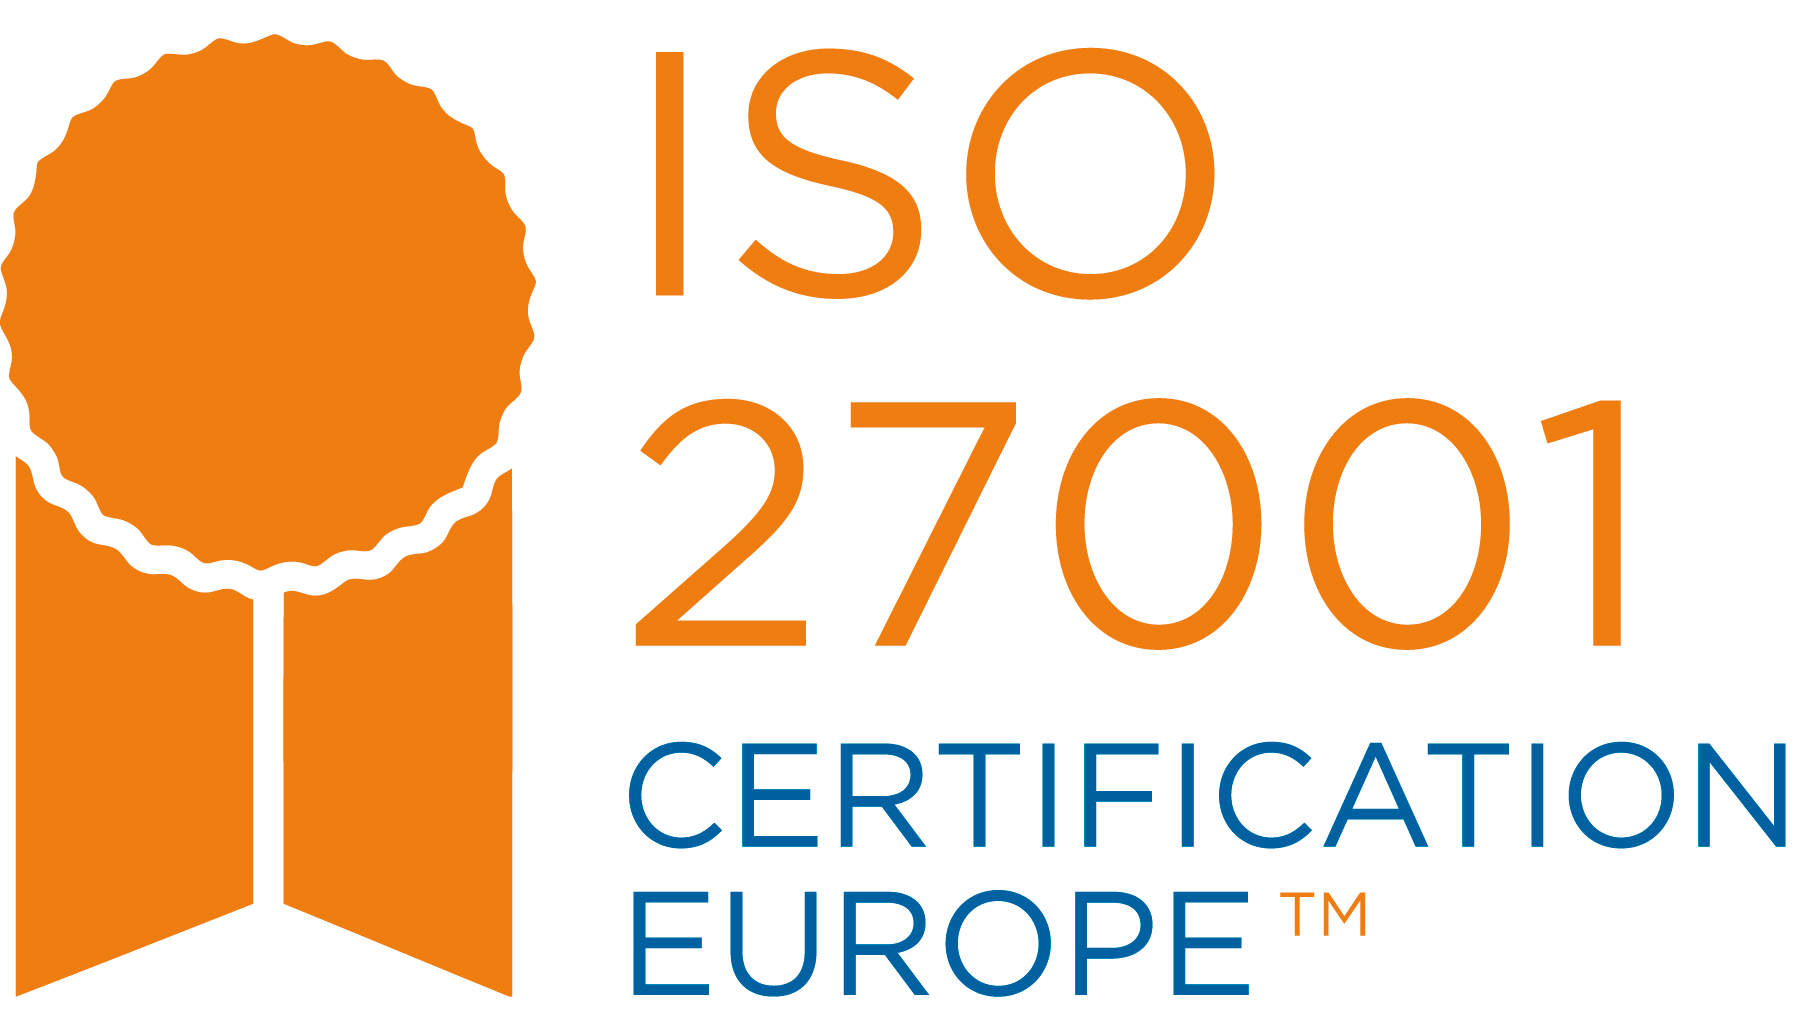 Certificazione ISO 27001